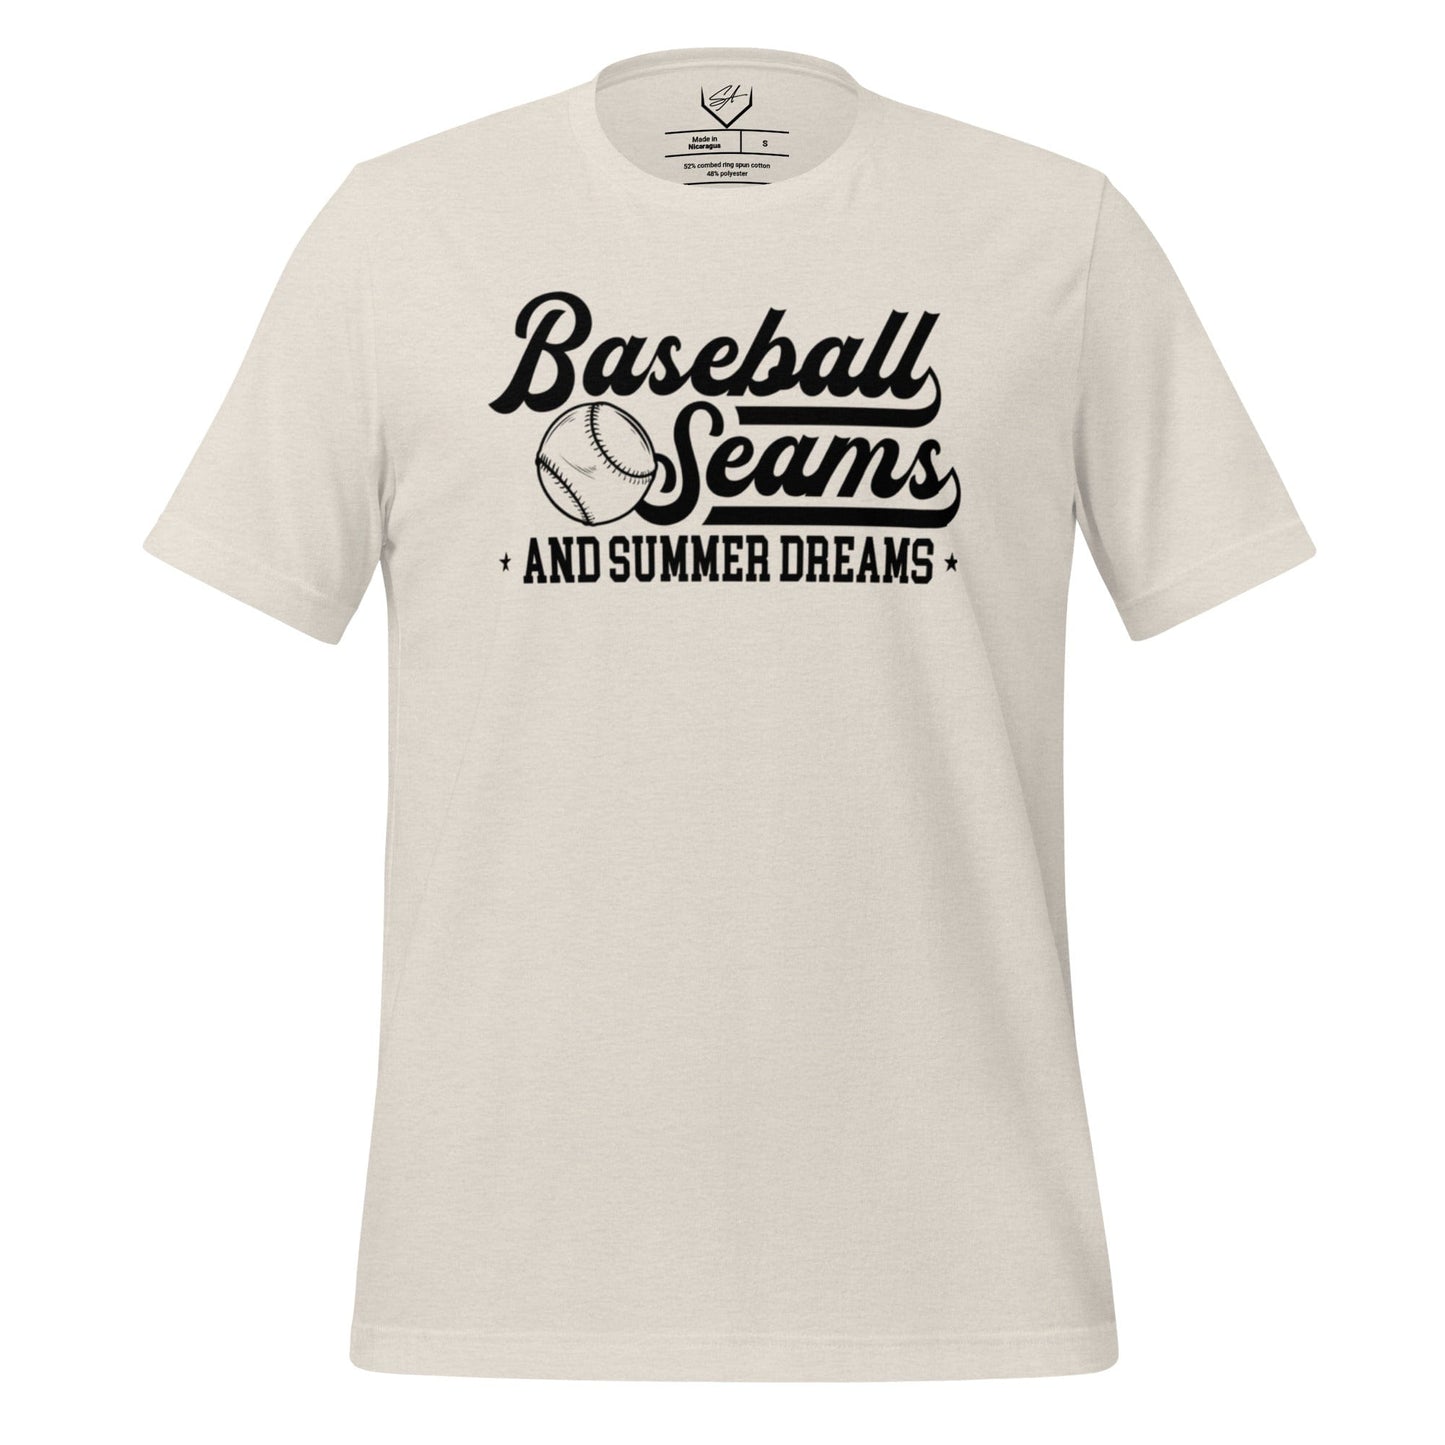 Baseball Seams And Summer Dreams - Adult Tee